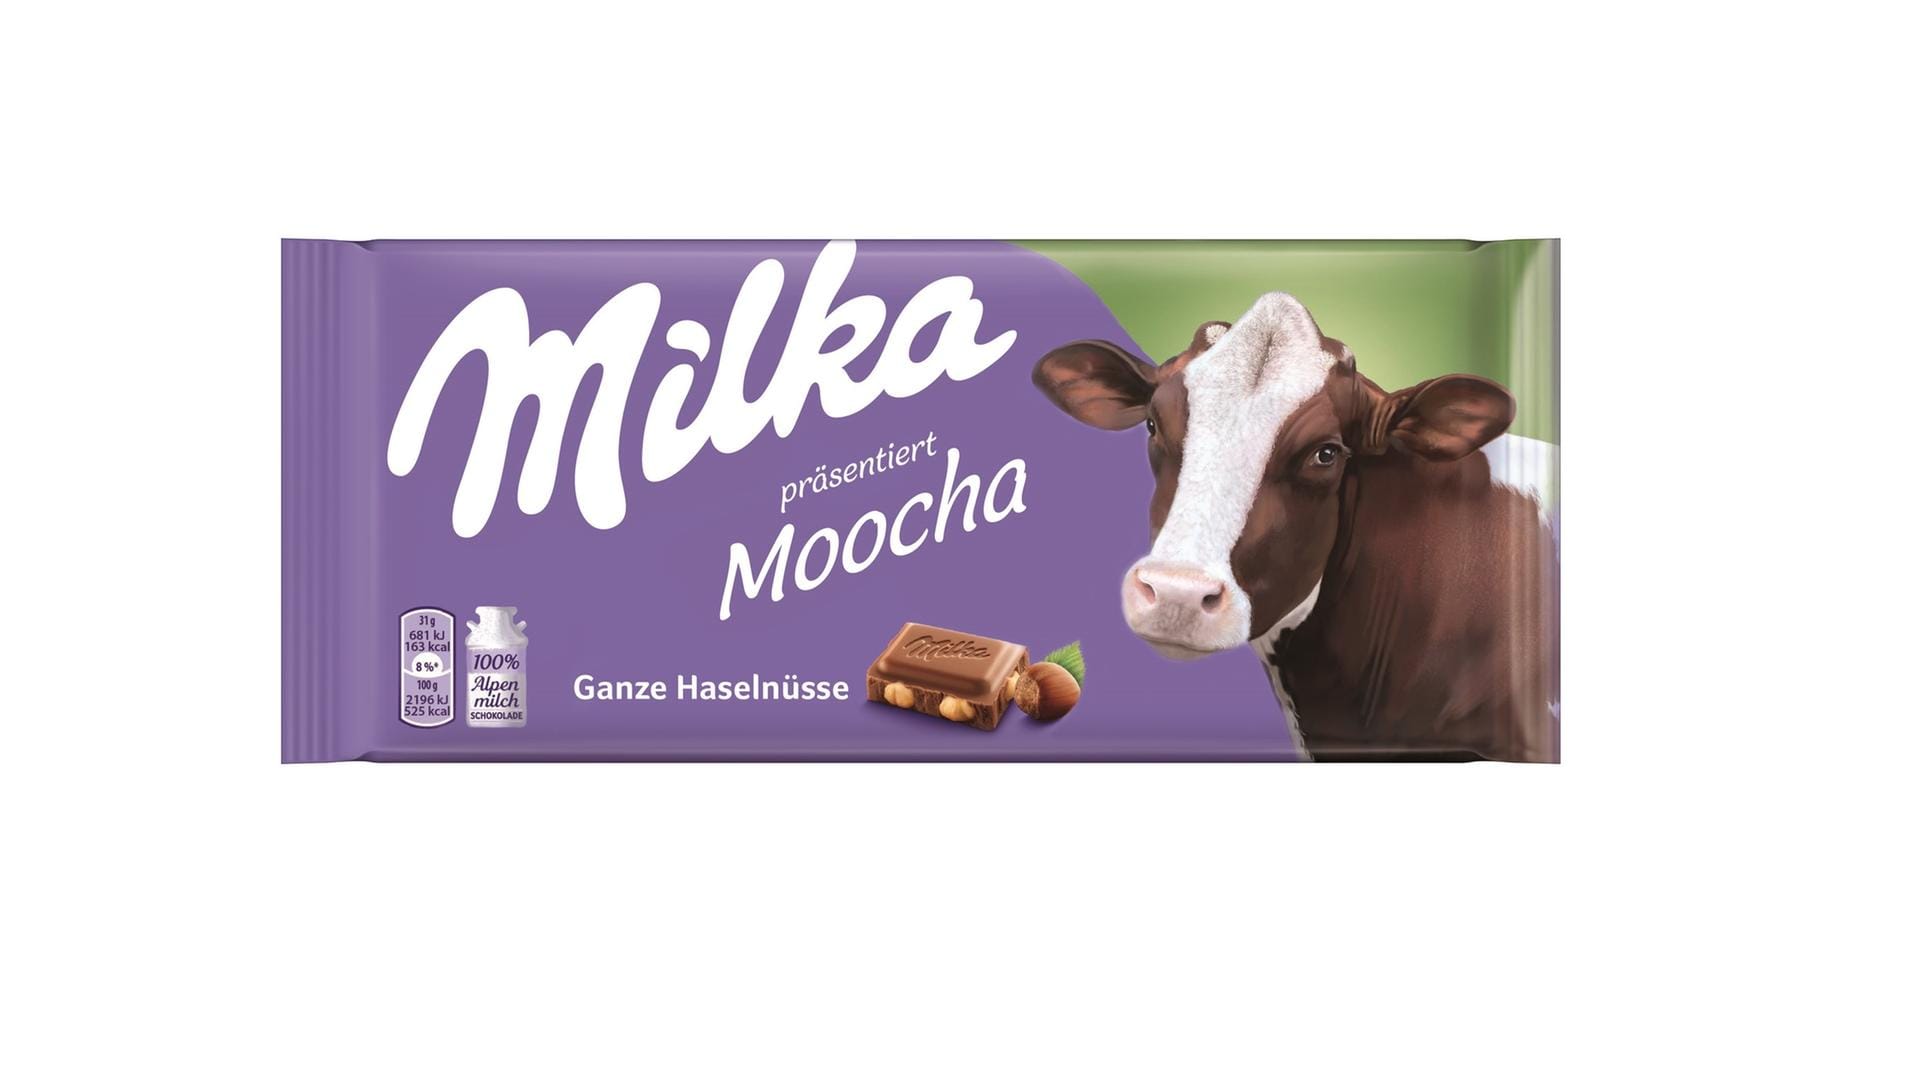 Neue Milka-Verpackung Ganze Haselnuss: Jetzt steht fest, welche Milka-Schokolade künftig in einer limitierten Edition mit echten Kühen auf der Verpackung erscheint.